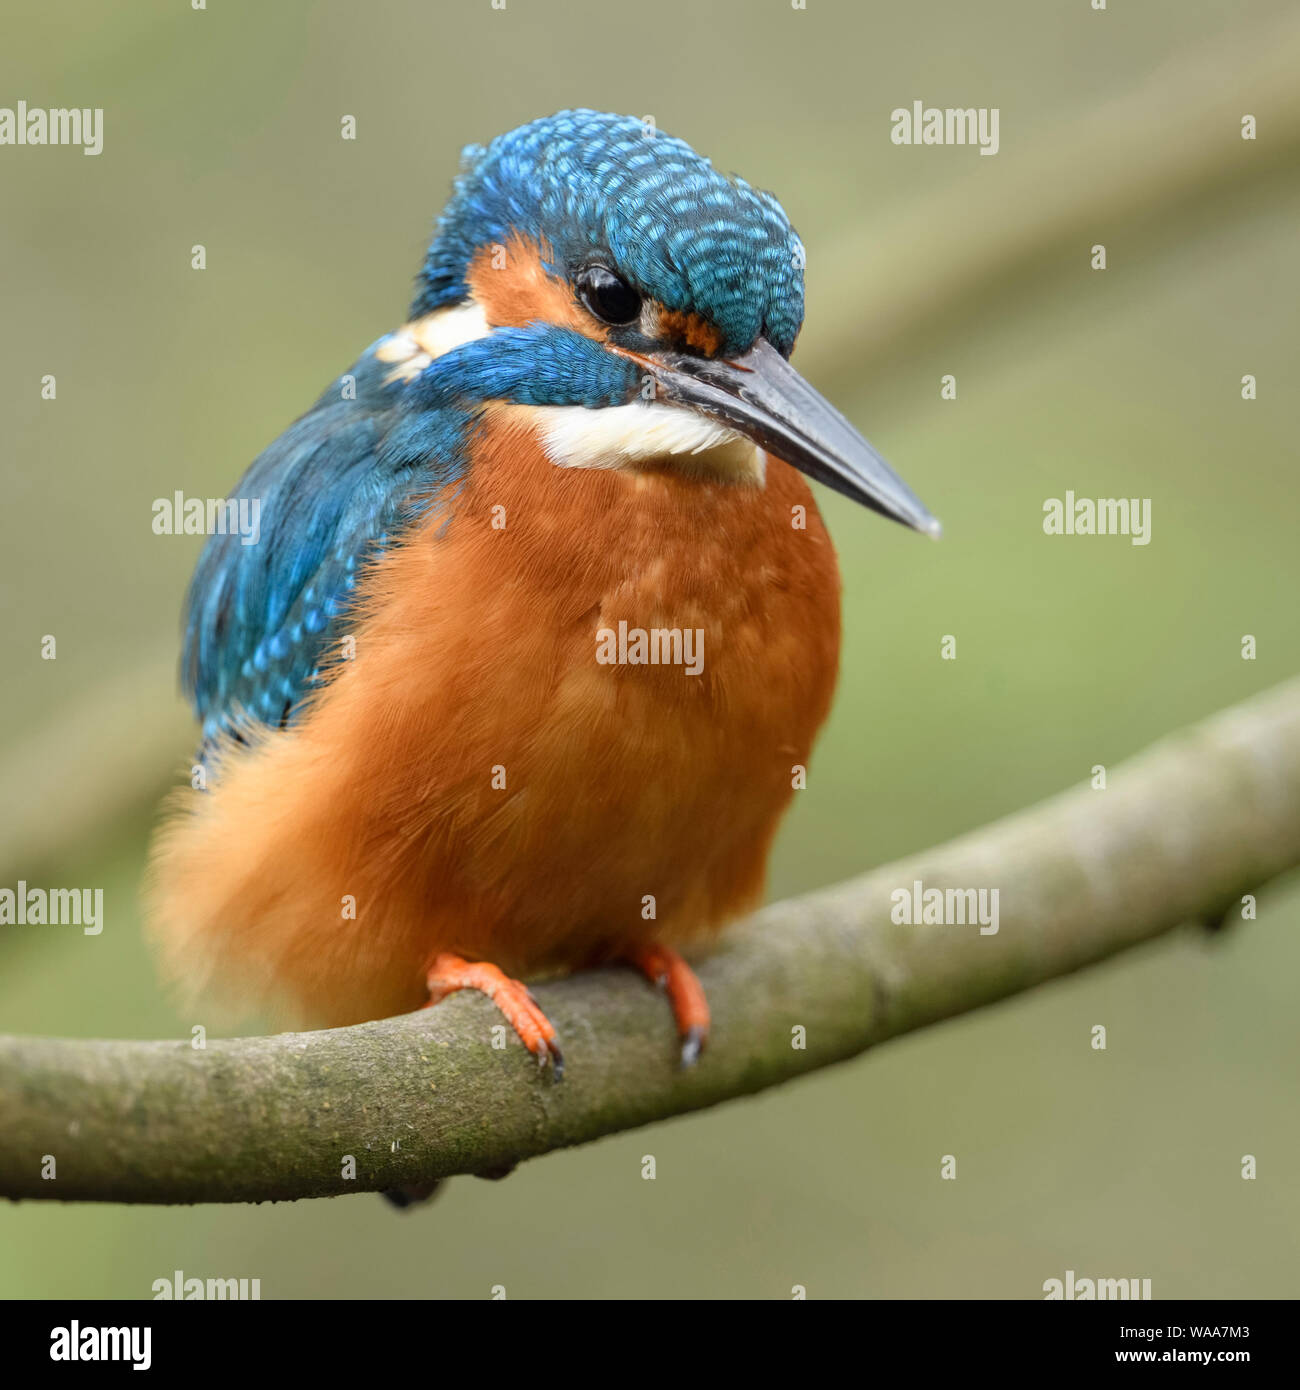 Kingfisher / Eisvogel euroasiático ( Alcedo atthis ), macho, coloridas aves, posado en una rama para la caza, vista frontal detallada, vida silvestre, Europa. Foto de stock